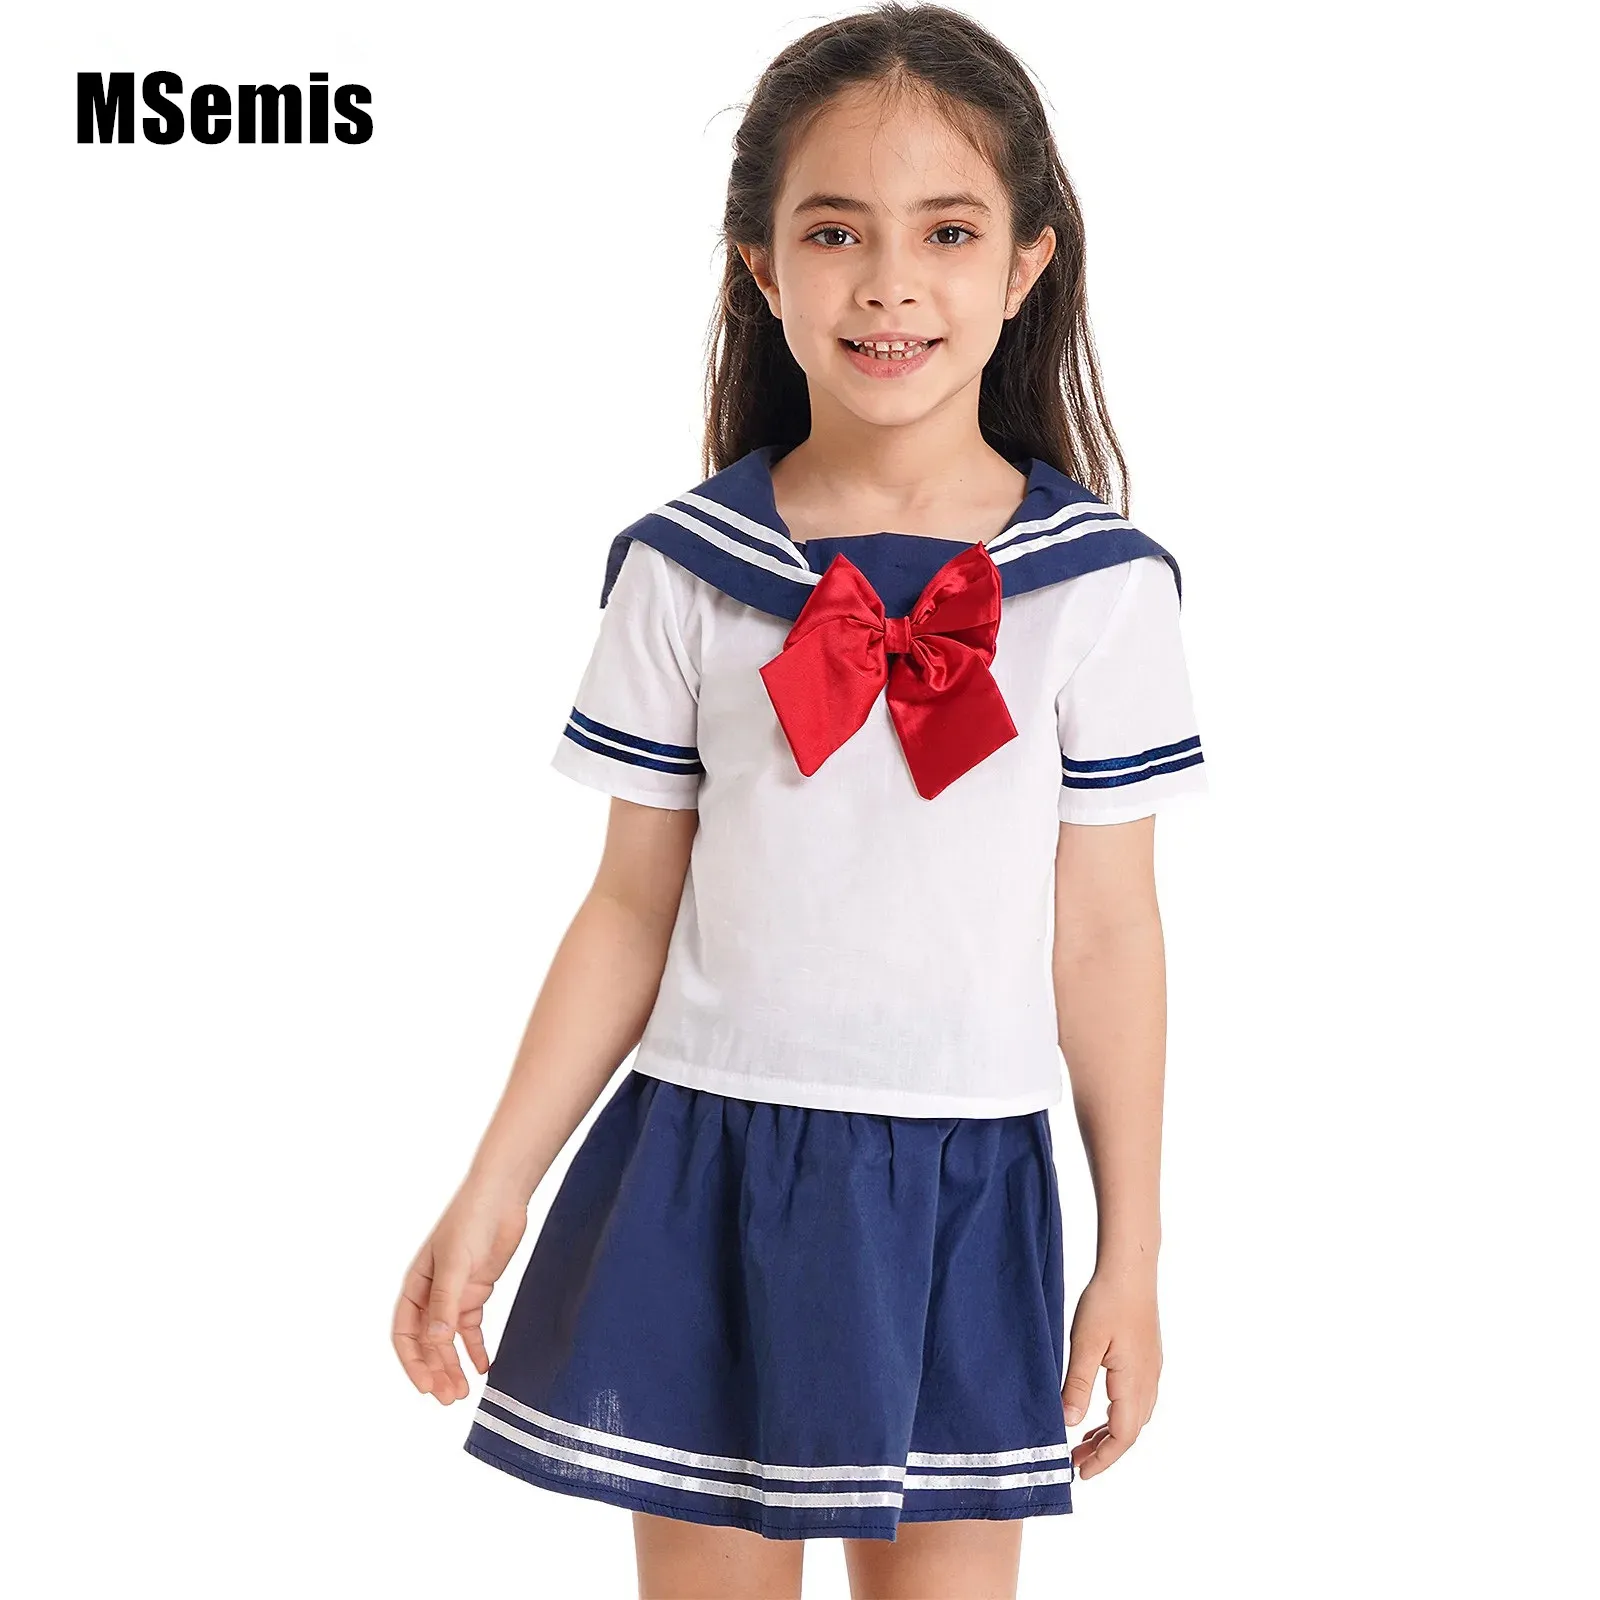 

Комплект школьной формы для девочек, рубашка в полоску, с коротким рукавом и воротником, со съемным бантом и стрейчевой строчкой